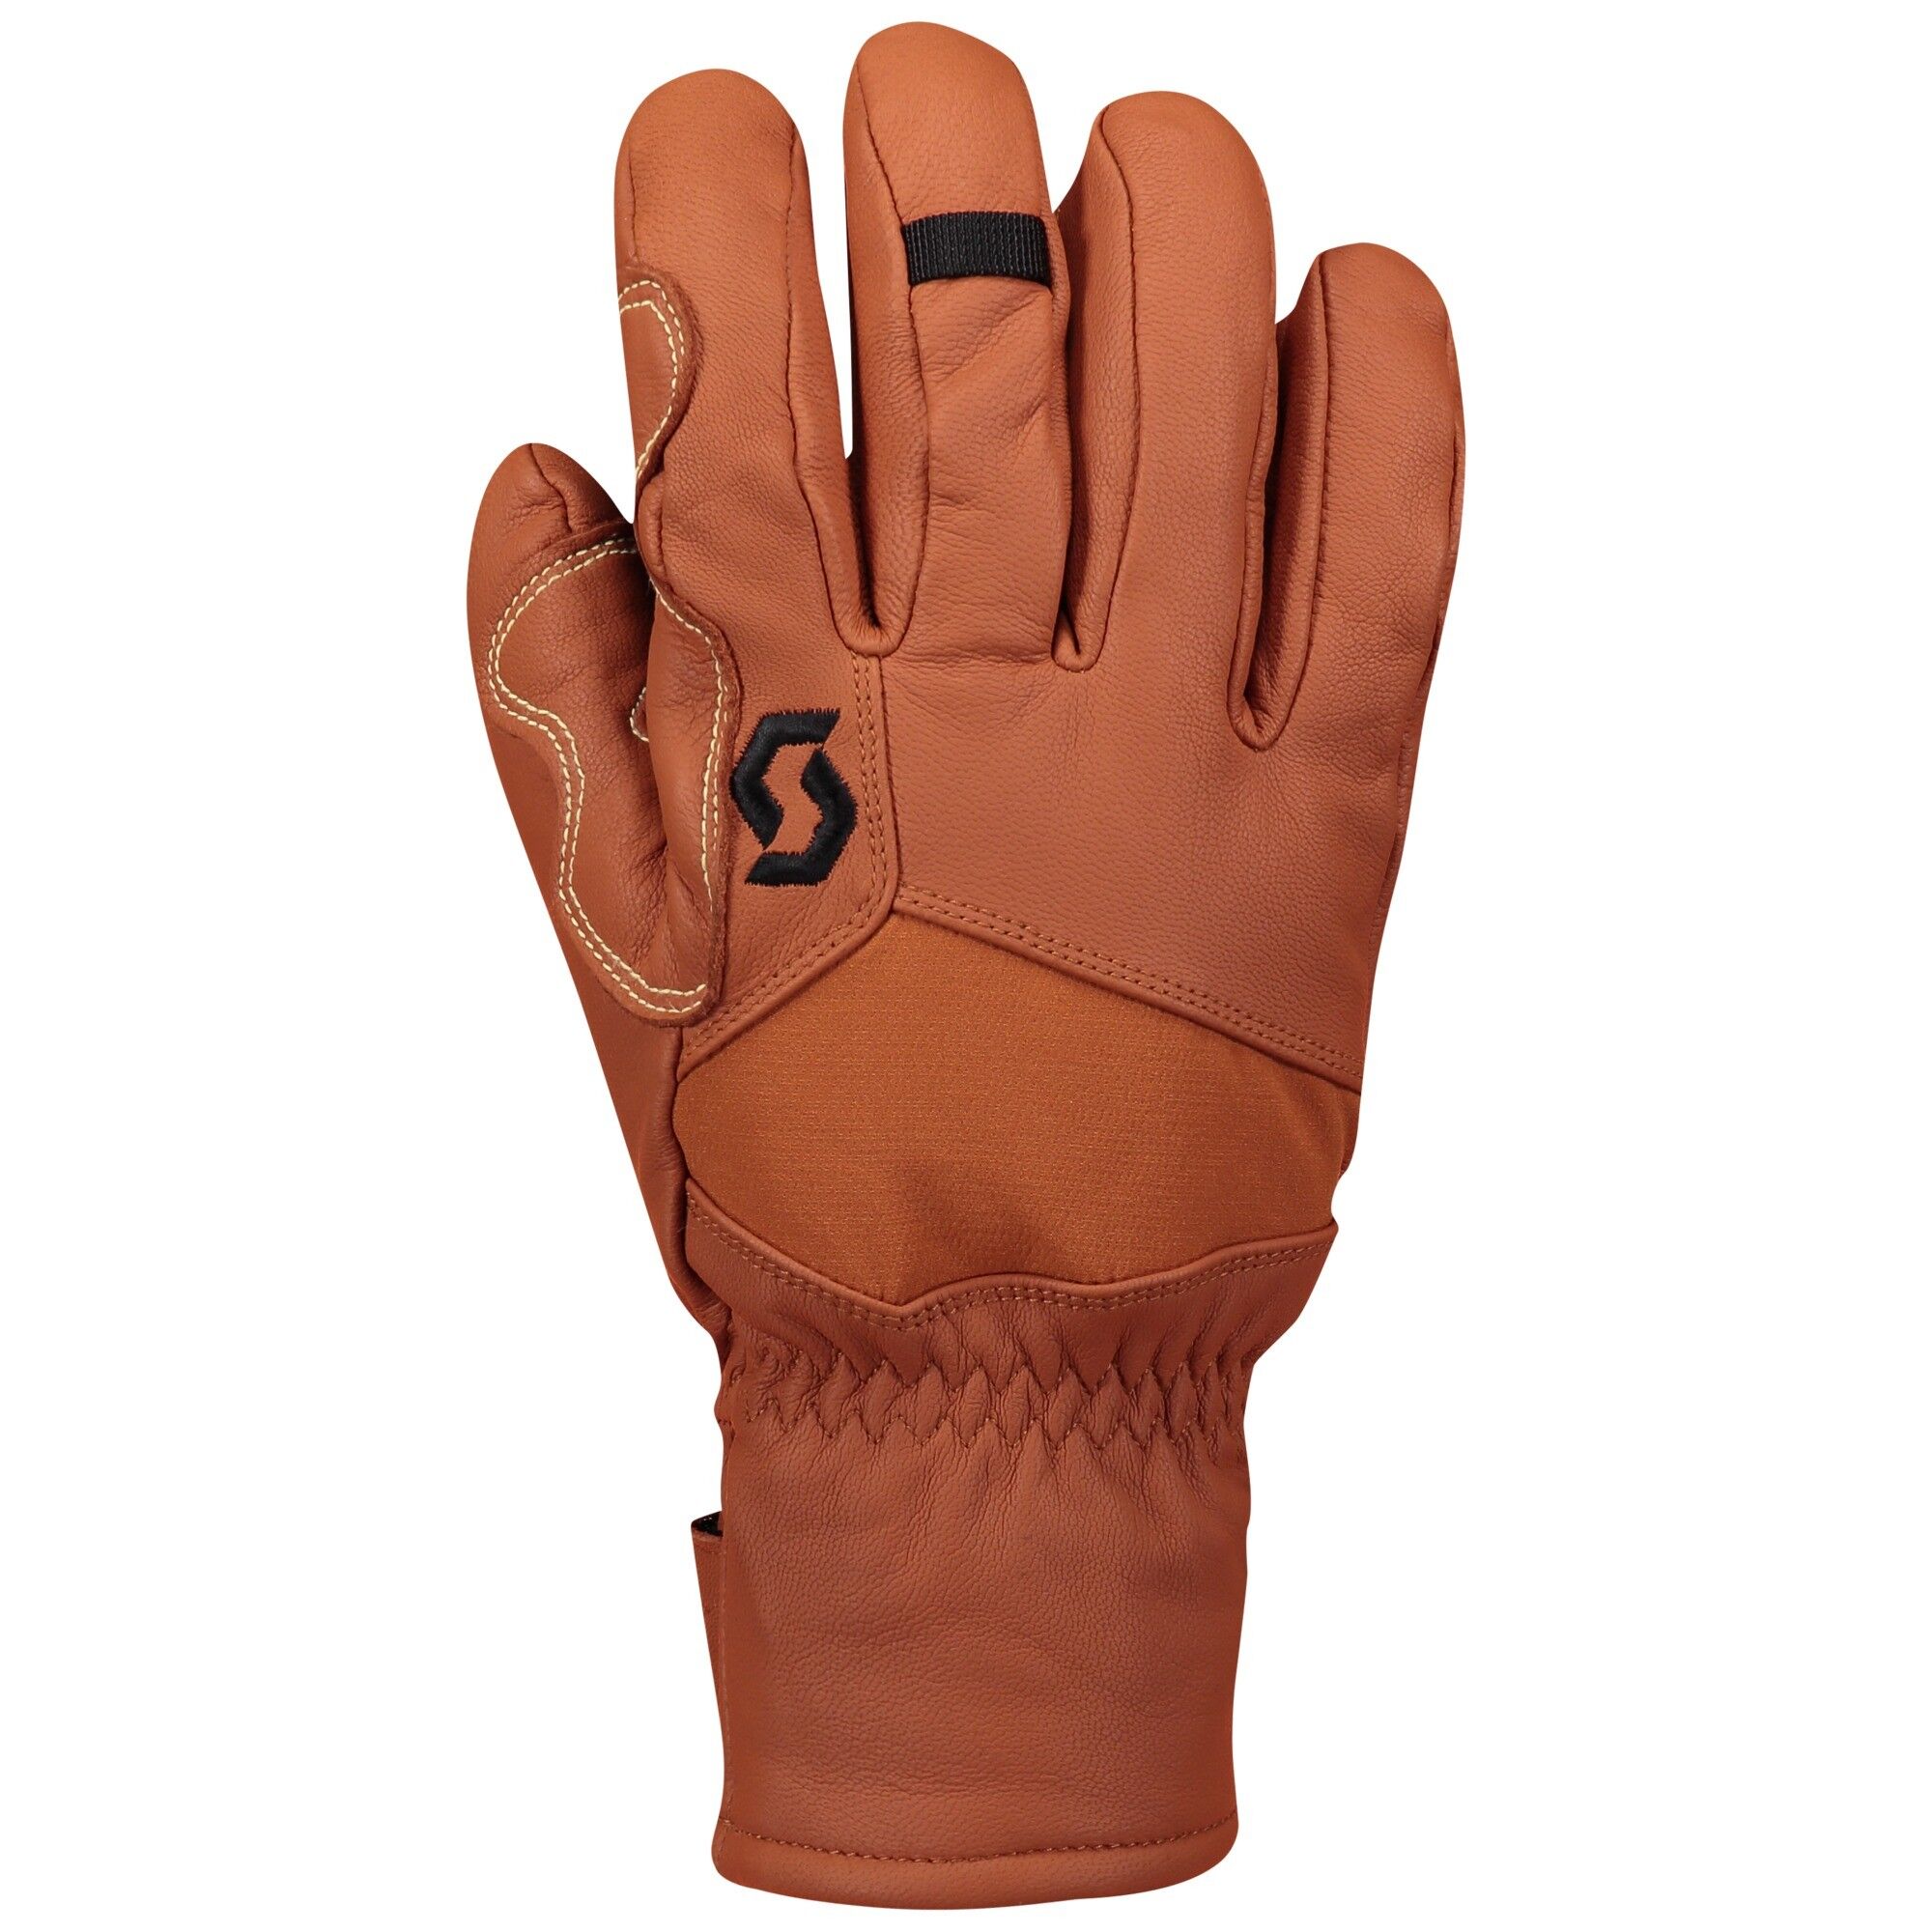 Scott Explorair Plus - Ski gloves - Men's